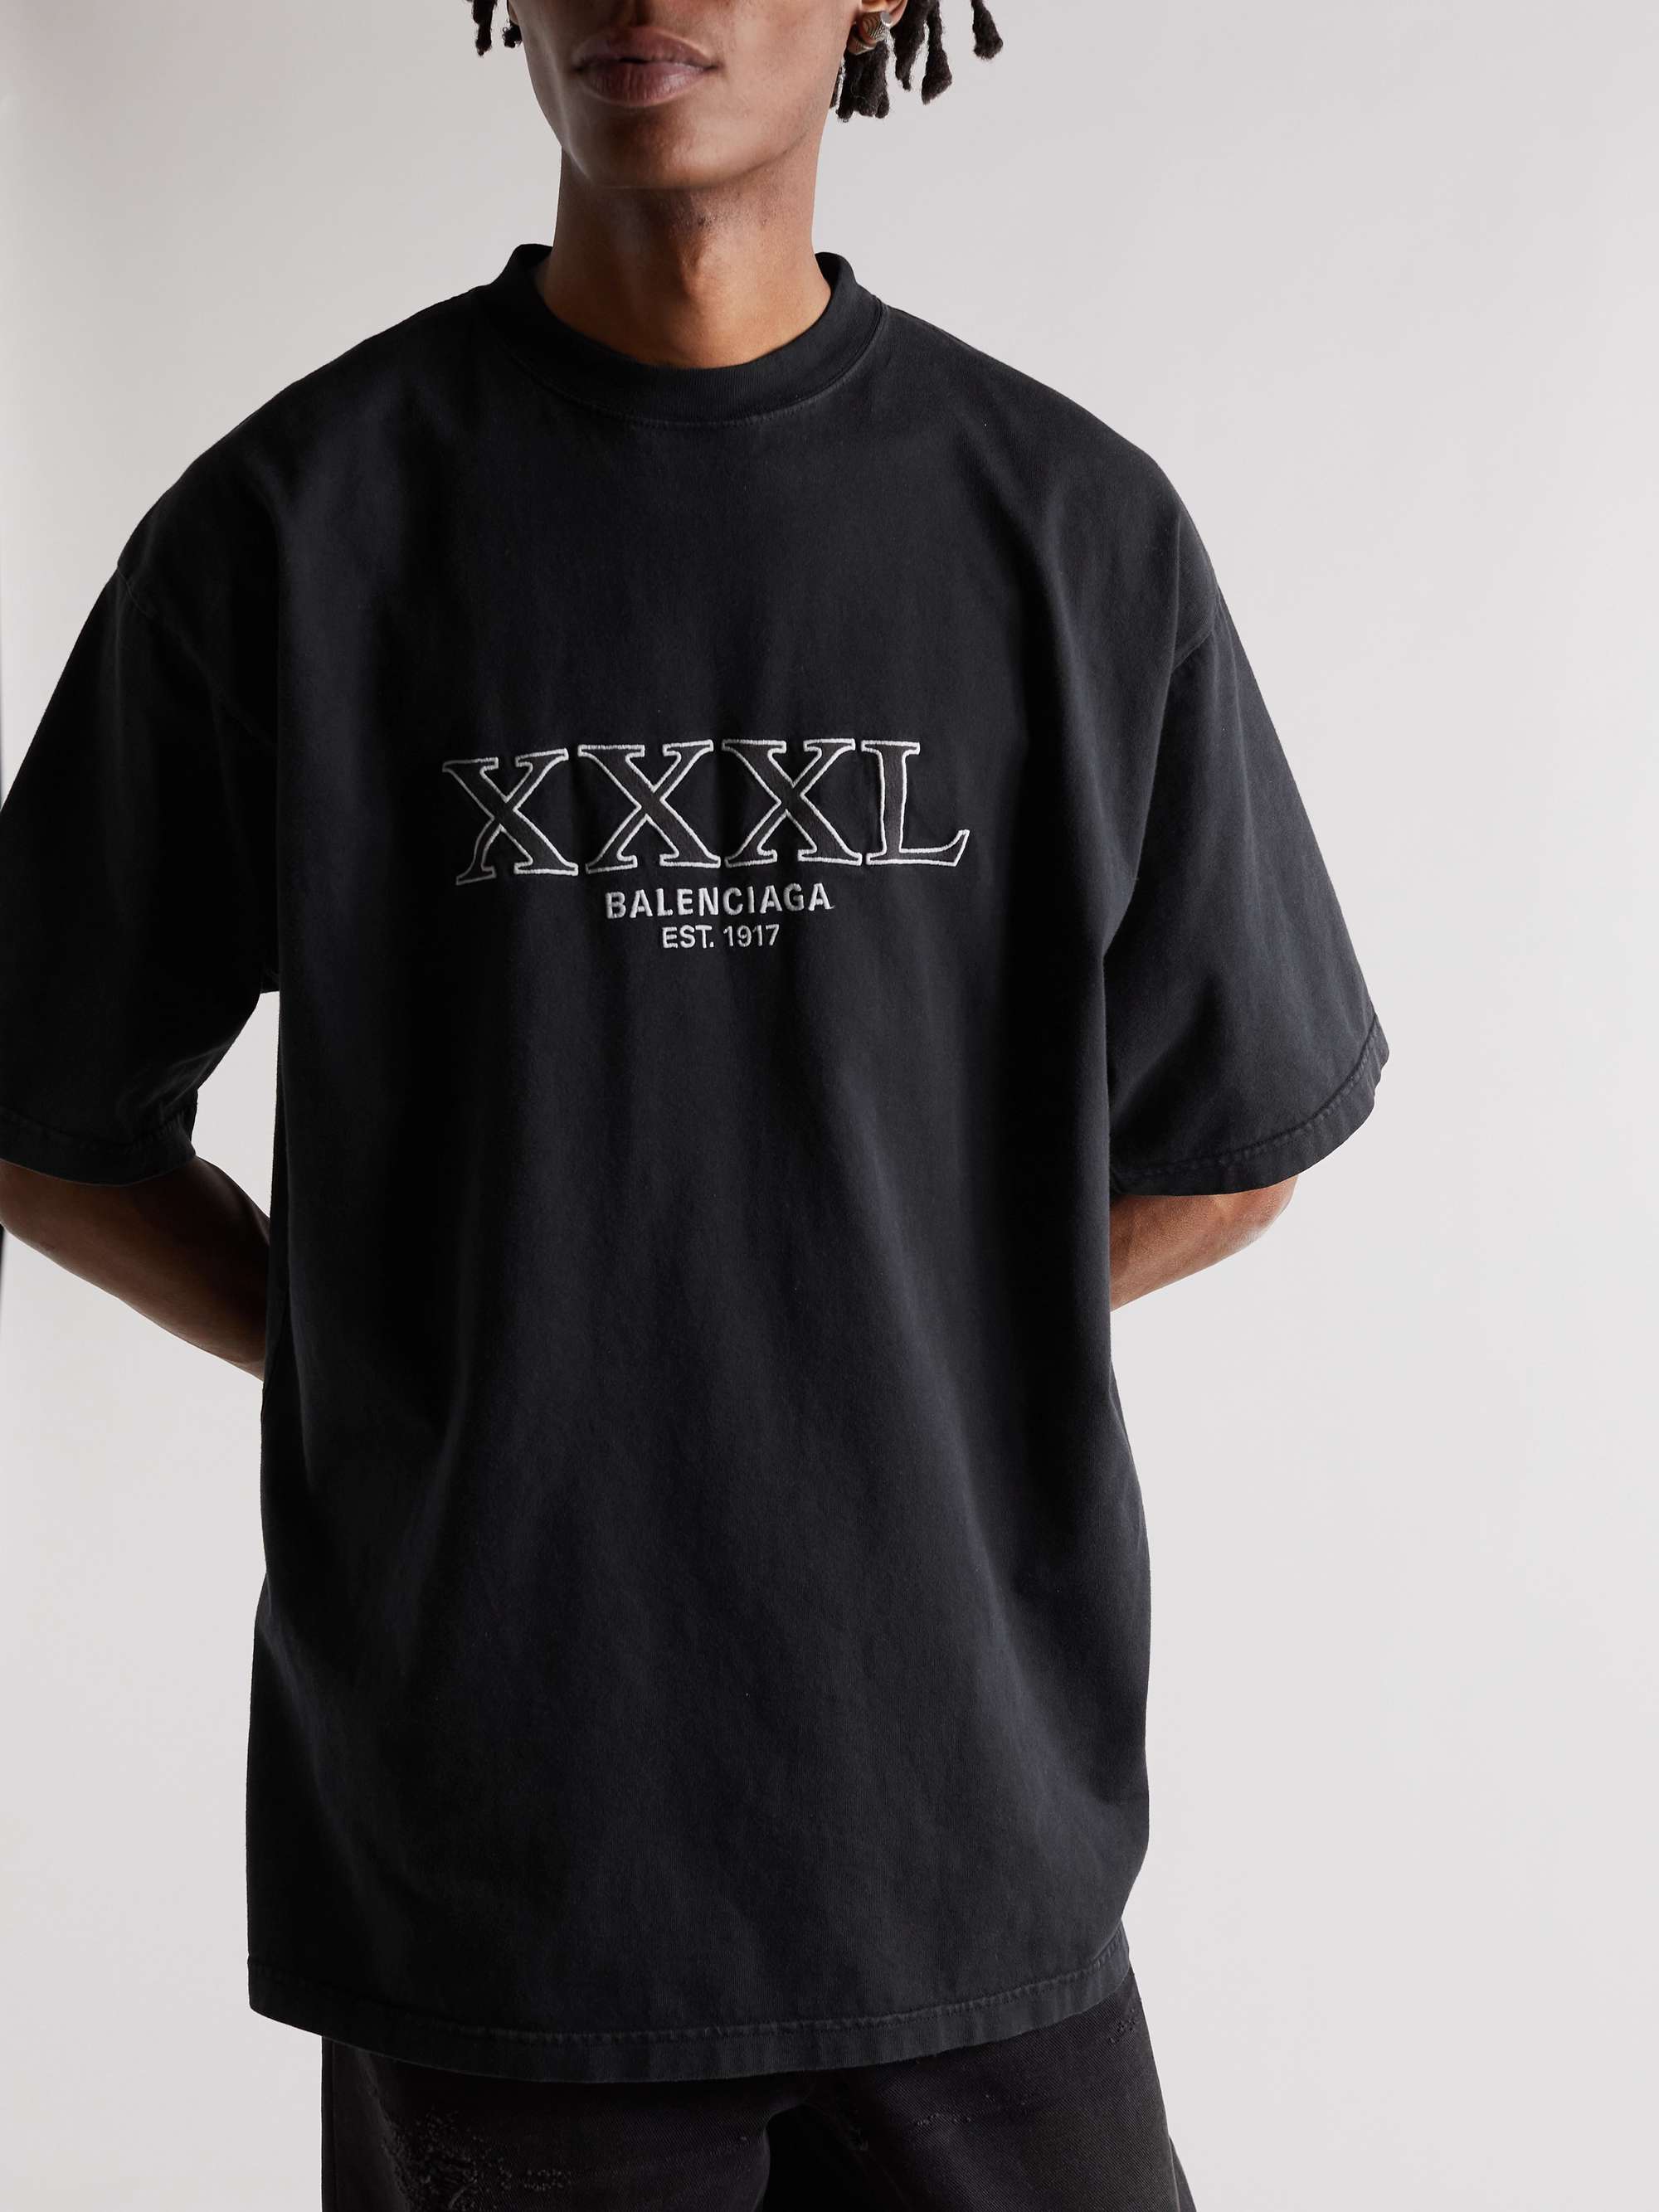 【タグ付き】BALENCIAGA XXXL Tシャツ